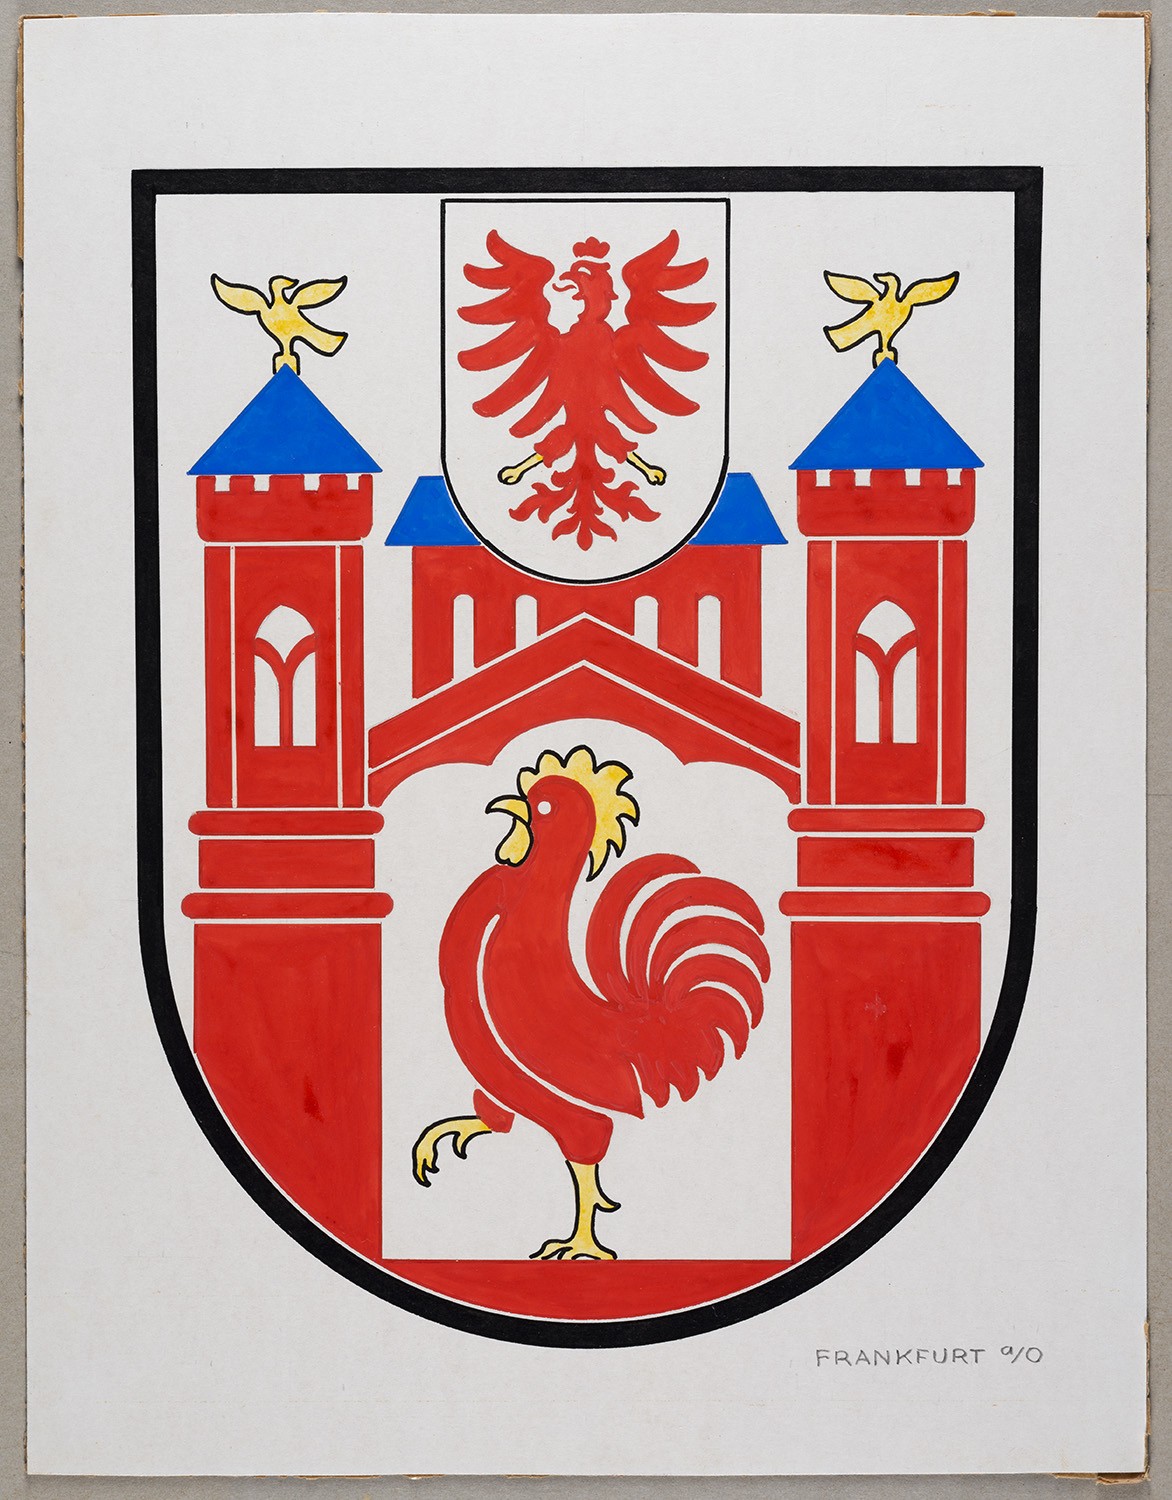 Wappen der Stadt Frankfurt (Oder) (Landesgeschichtliche Vereinigung für die Mark Brandenburg e.V., Archiv CC BY)